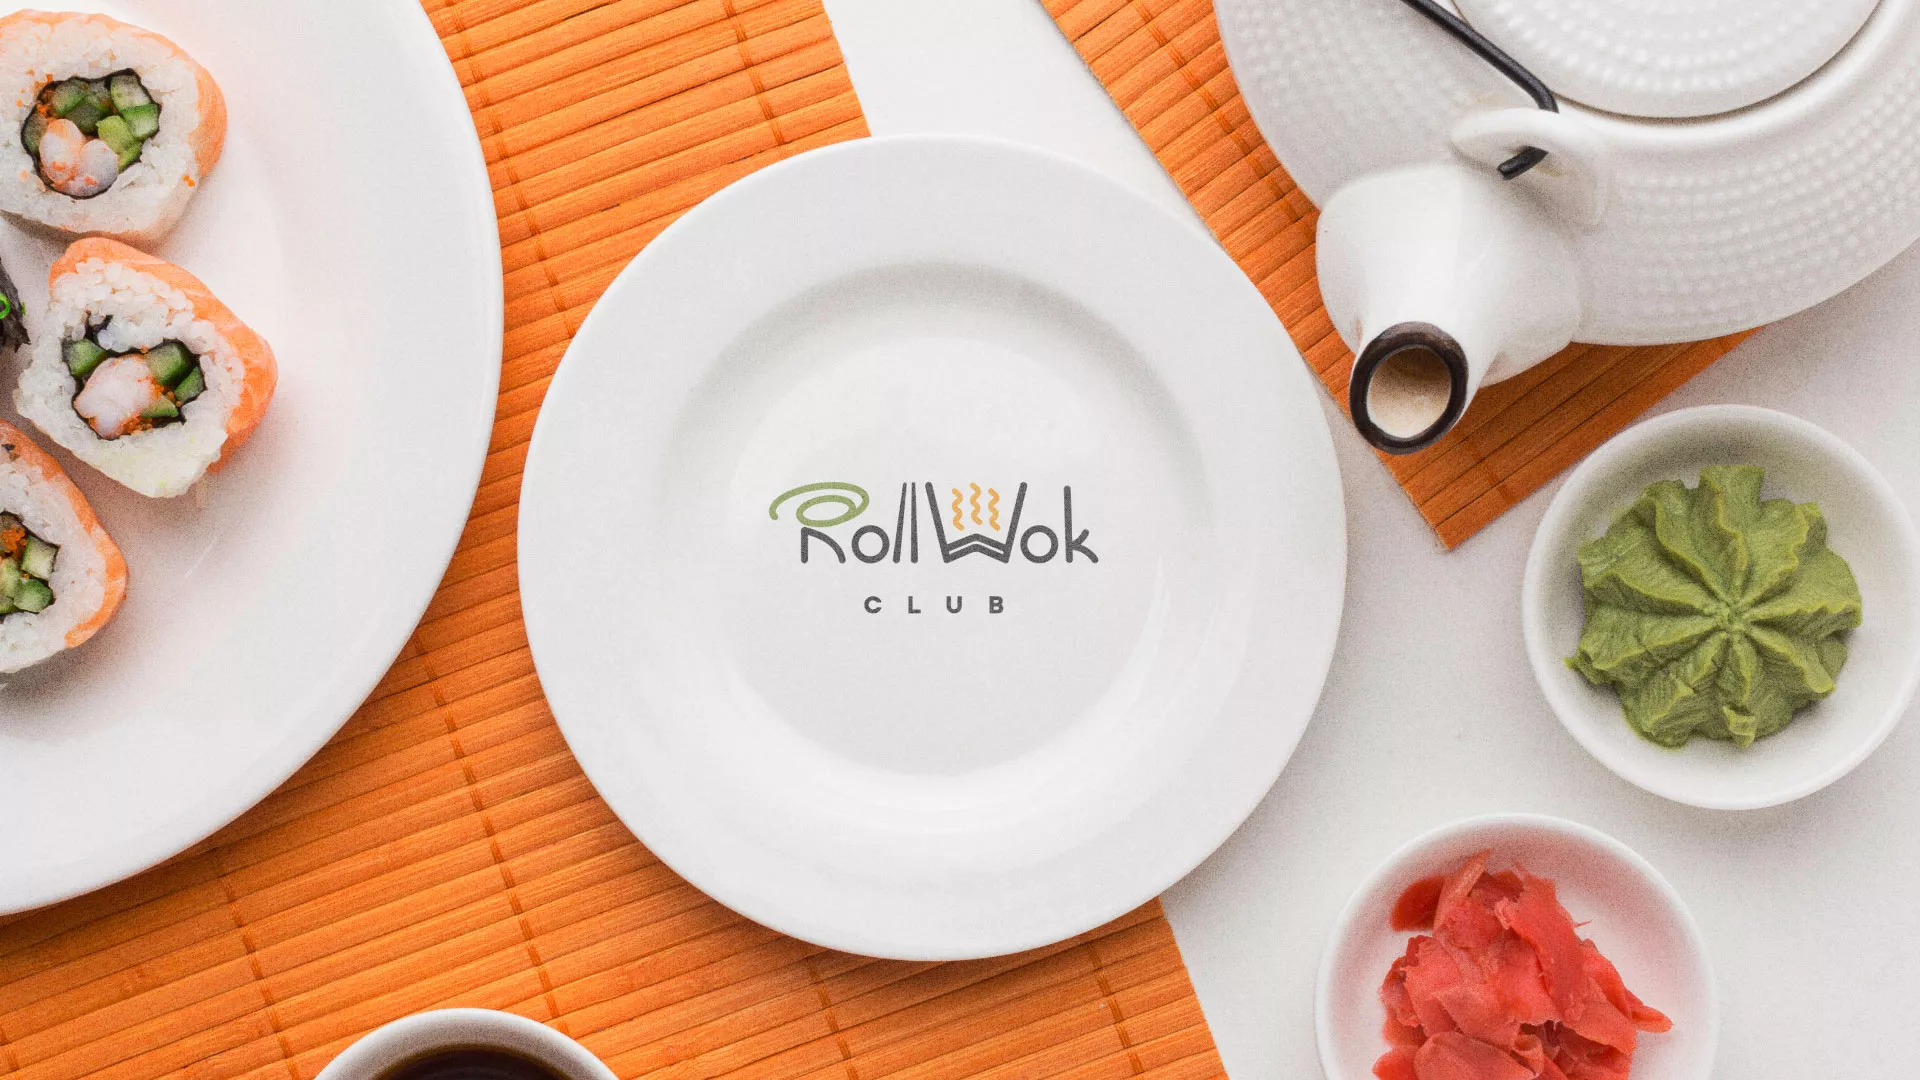 Разработка логотипа и фирменного стиля суши-бара «Roll Wok Club» в Ковылкино